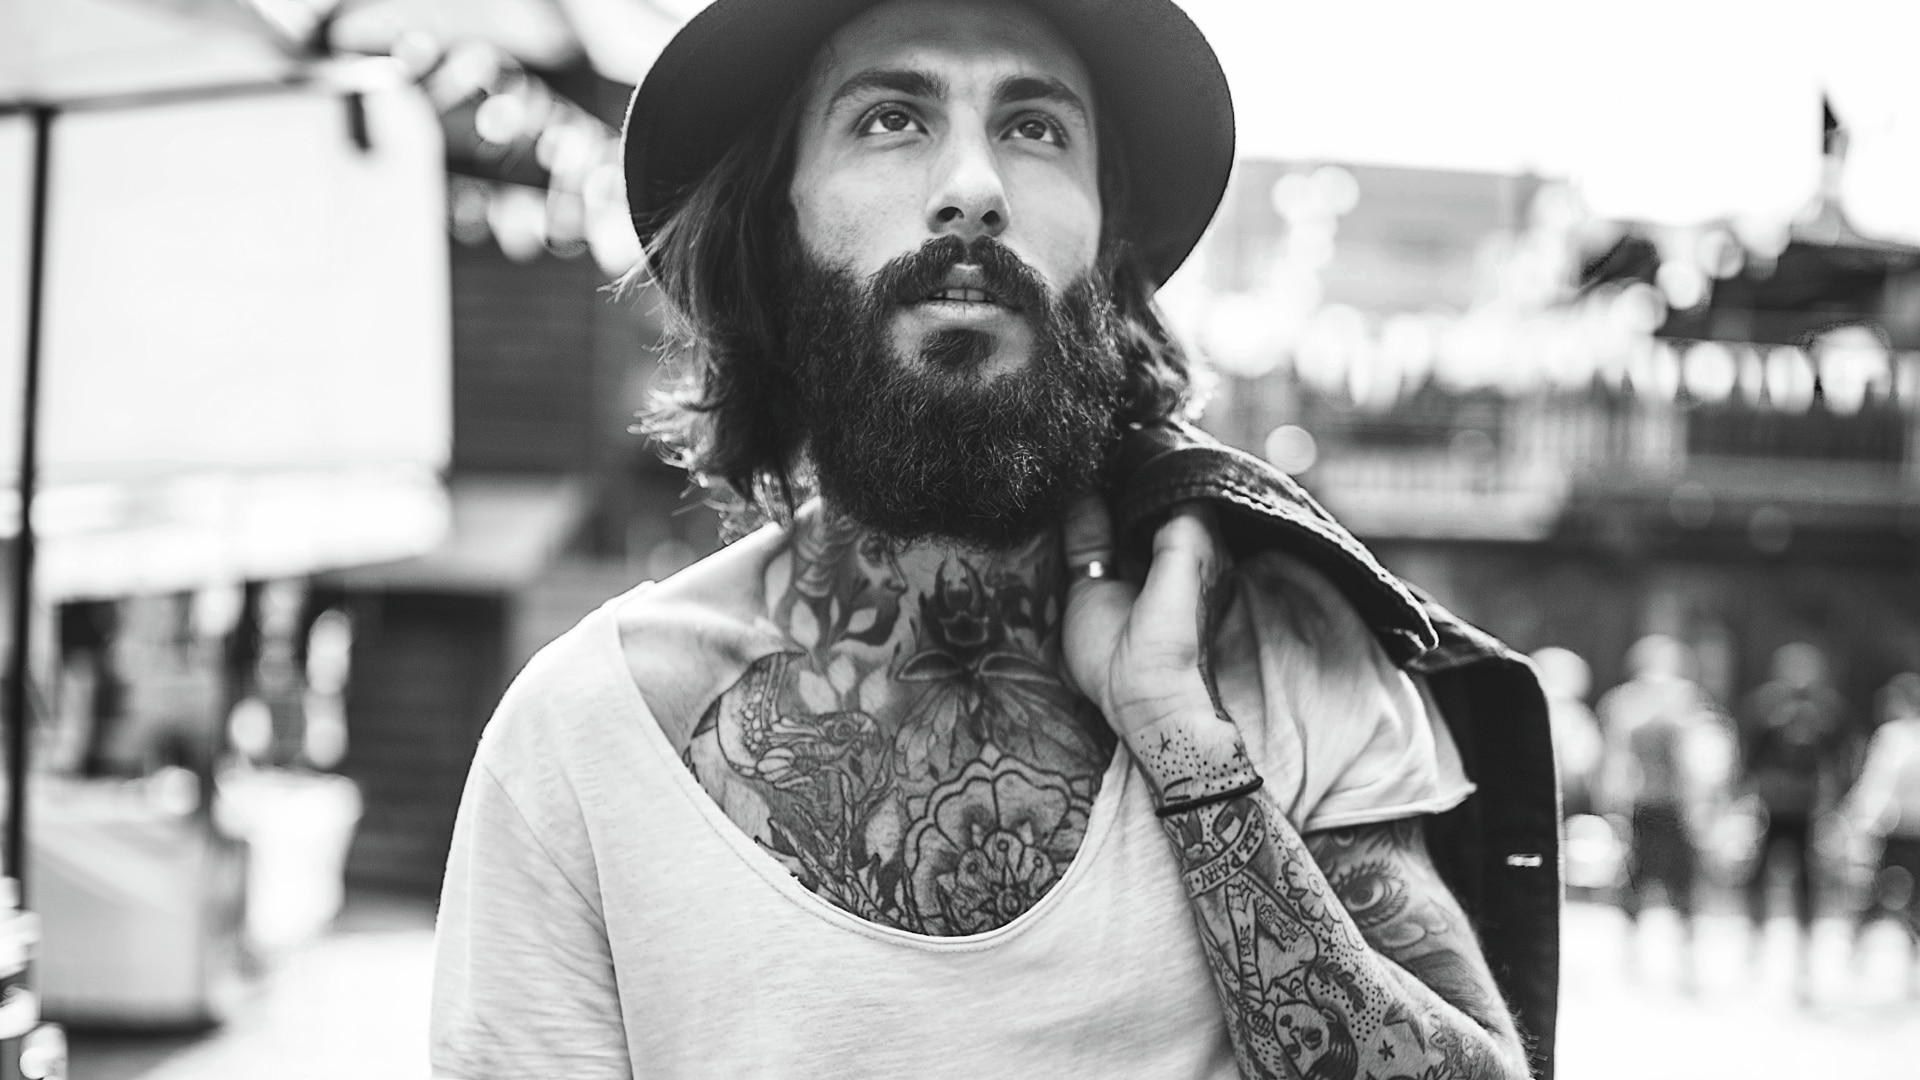 Een man met een volle baard en tattoos.